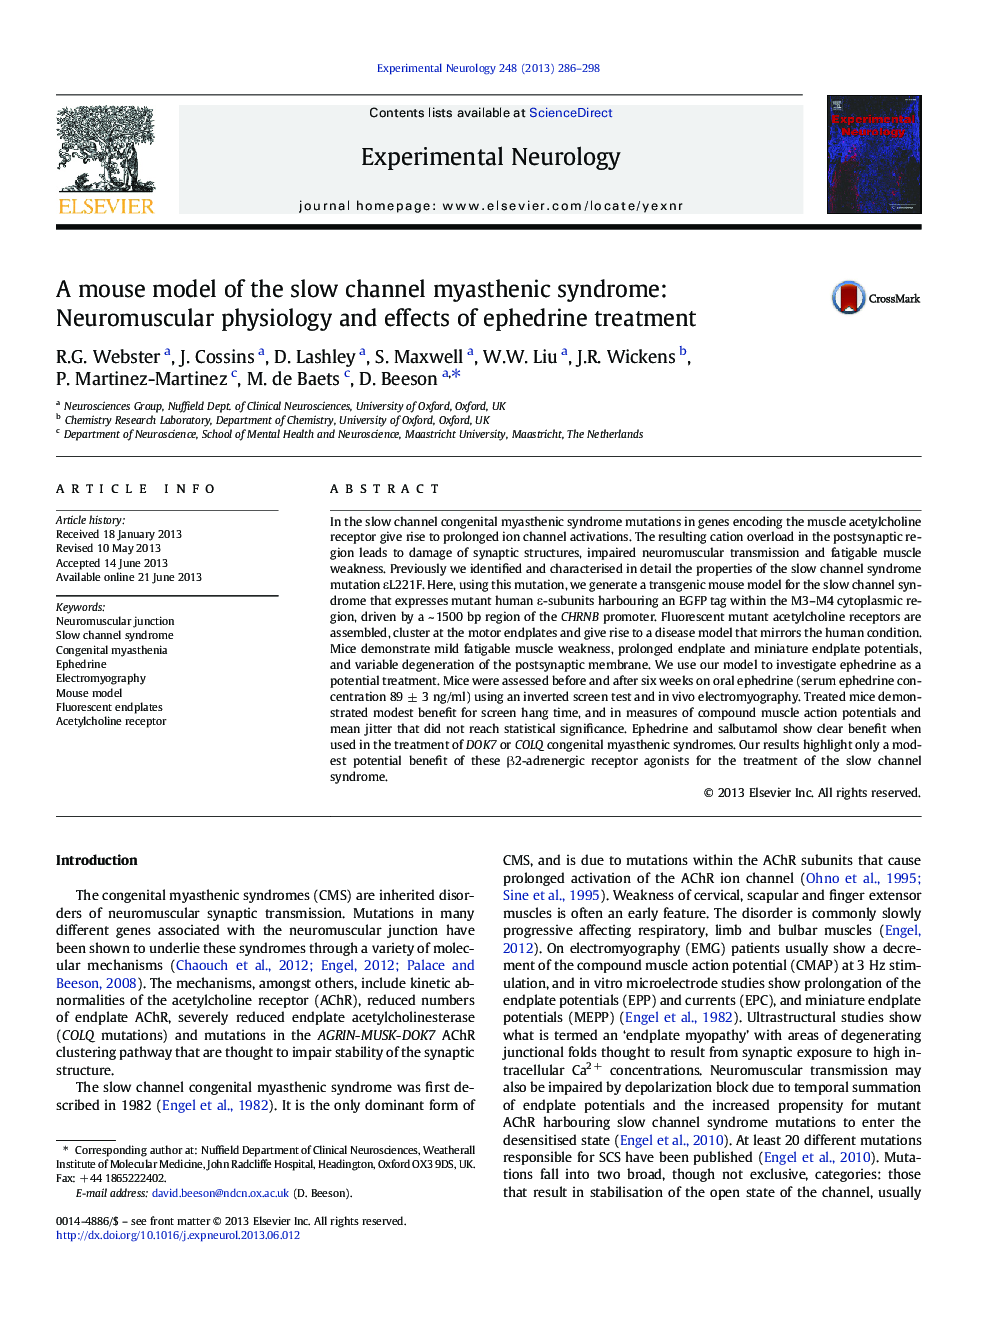 مدل موش سندرم میستنیک کانال آهسته: فیزیولوژی عصبی عضلانی و اثرات درمان افدرین 